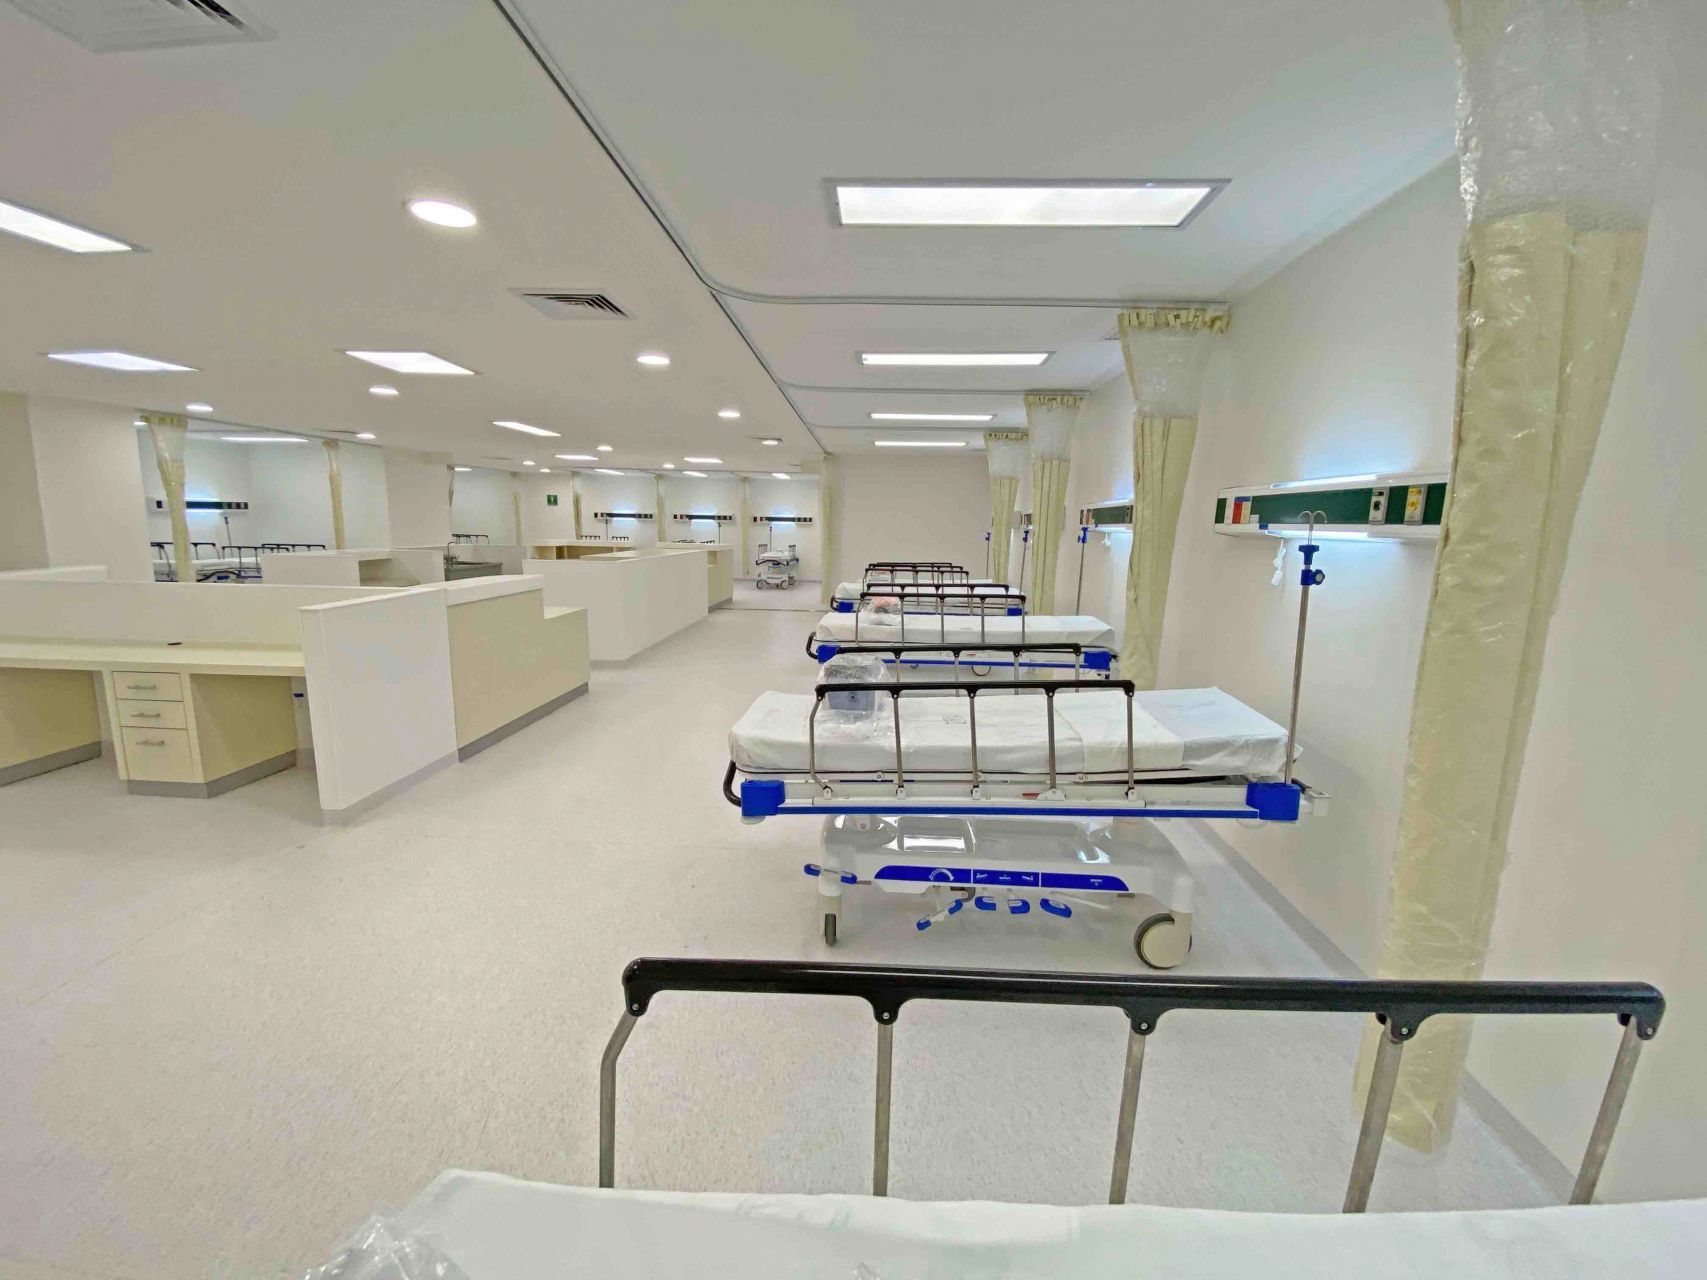 En los hospitales se han integrado sistemas de vigilancia en torno a la distribución de los recursos. (Foto: Cuartoscuro)